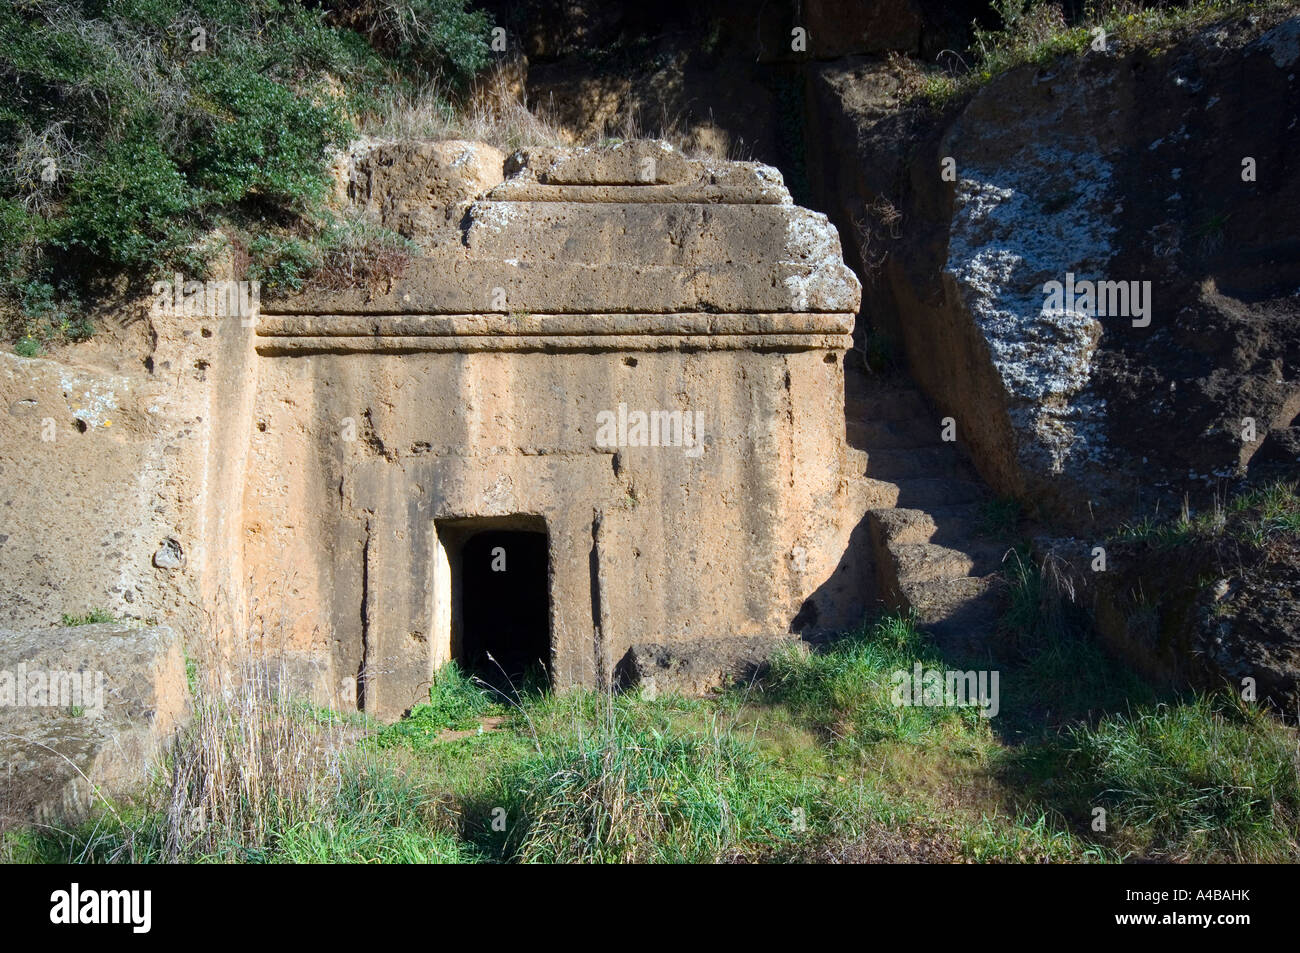 Tomba etrusca denominata "cube" (in italiano: Tomba un dado), necropoli di Blera, Italia. Foto Stock